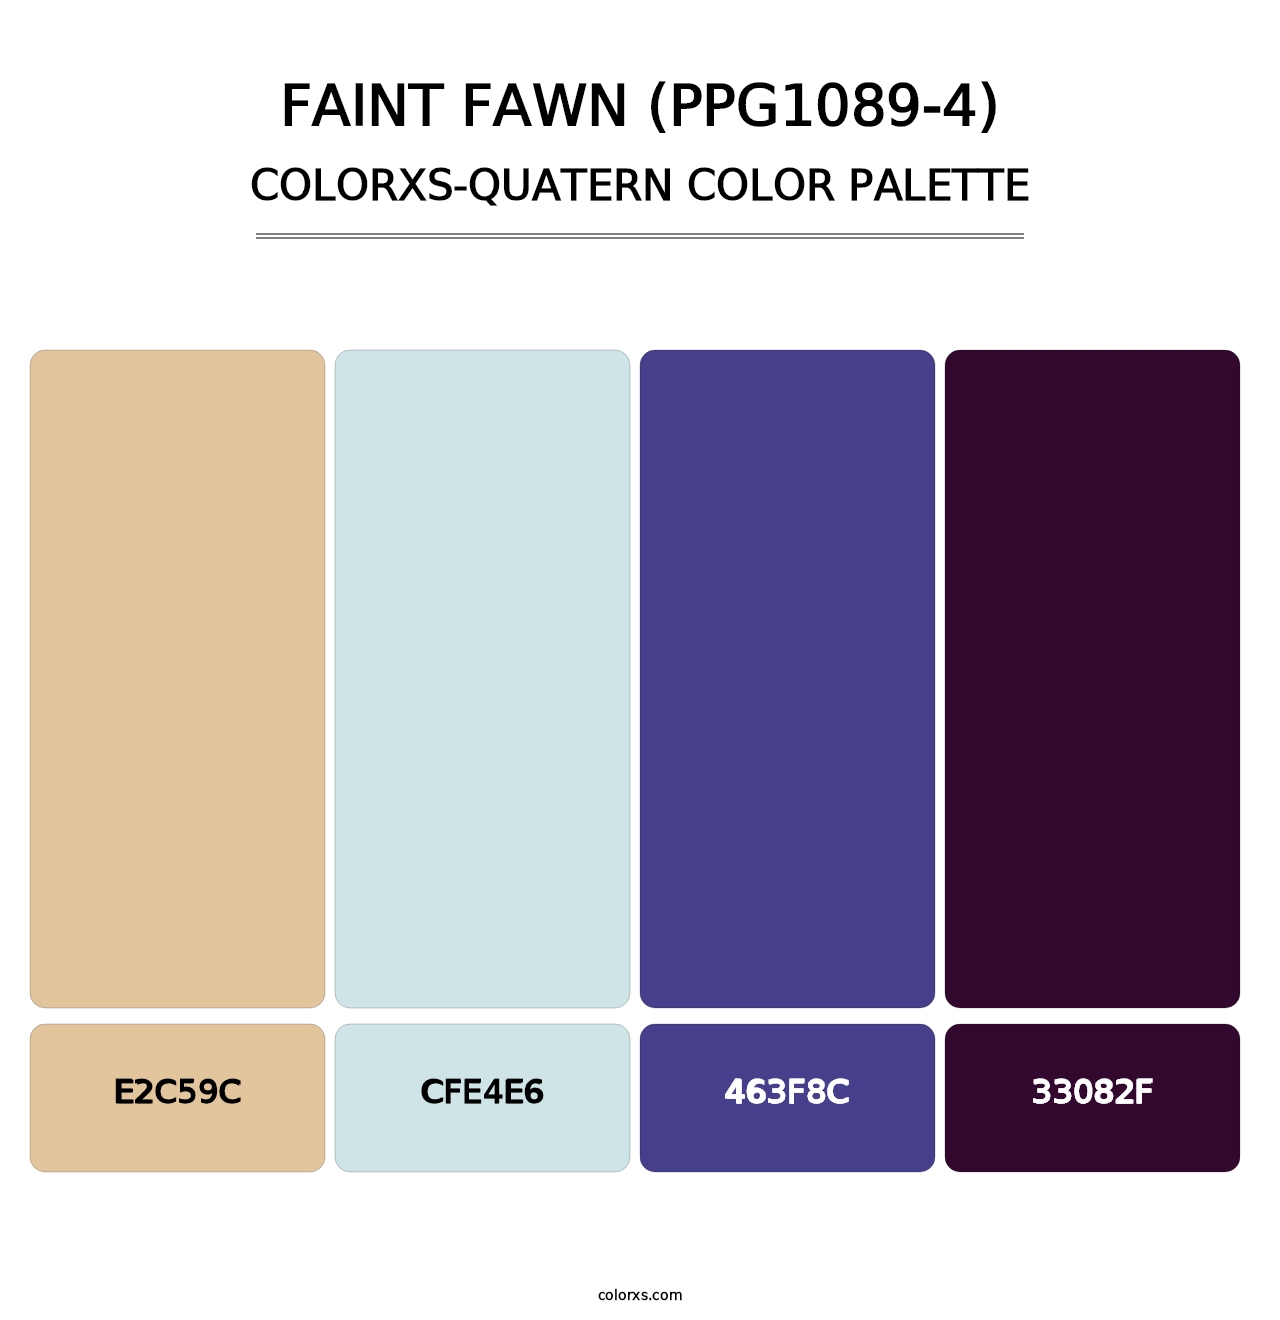 Faint Fawn (PPG1089-4) - Colorxs Quatern Palette